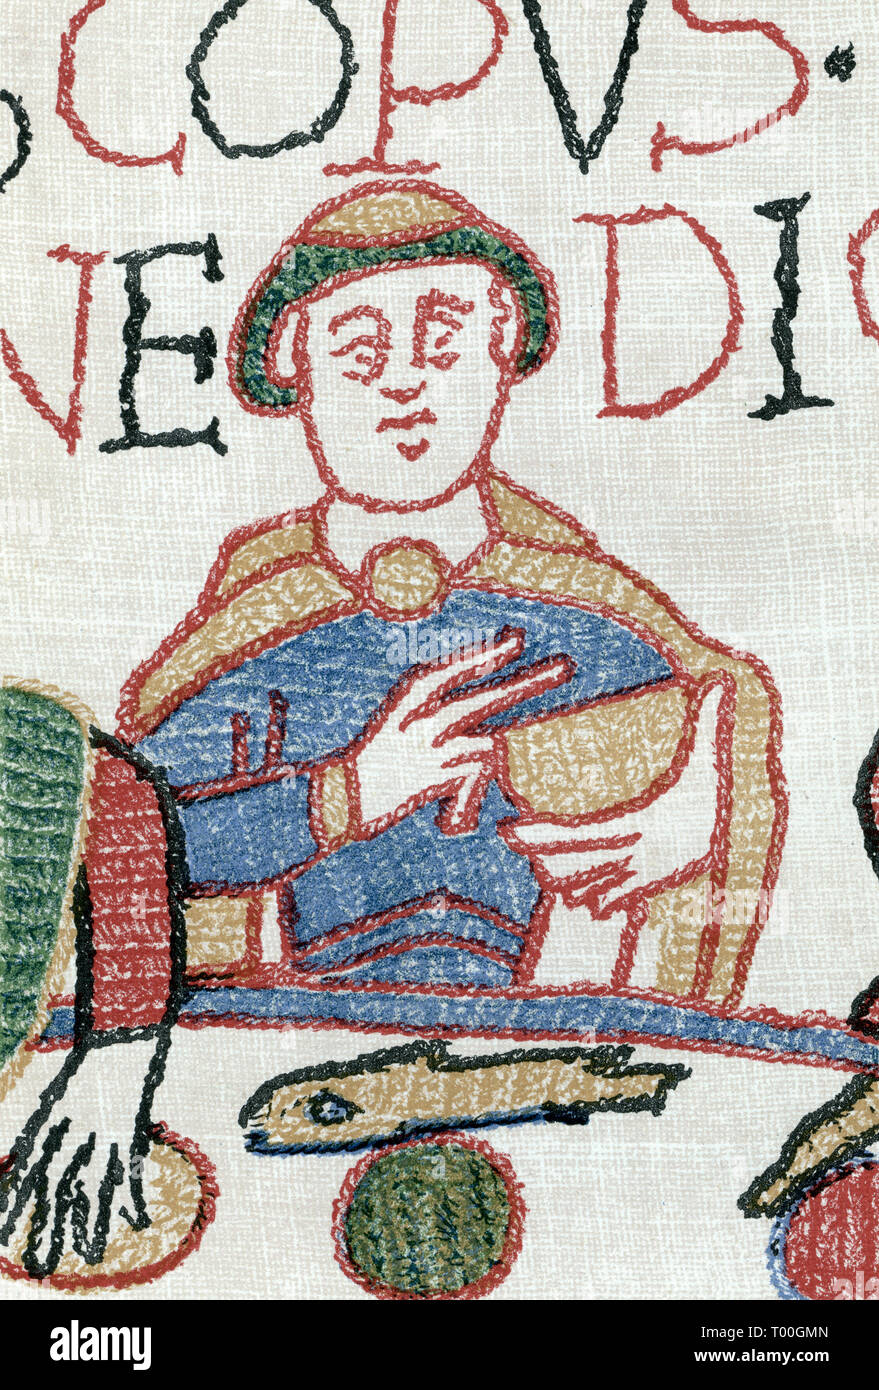 Arazzo di Bayeux: Vescovo Oddone dicendo grazia dopo Norman lo sbarco in Inghilterra, Settembre, 1066. L'Arazzo di Bayeux è un panno ricamato misurano circa 70 metri (230 ft) di lunghezza e 50 cm (20 in) di altezza. Essa descrive gli eventi che portano fino alla conquista normanna dell'Inghilterra in materia di Guglielmo duca di Normandia e Harold, Earl del Wessex, successivamente re d'Inghilterra, e culminata nella battaglia di Hastings. Foto Stock